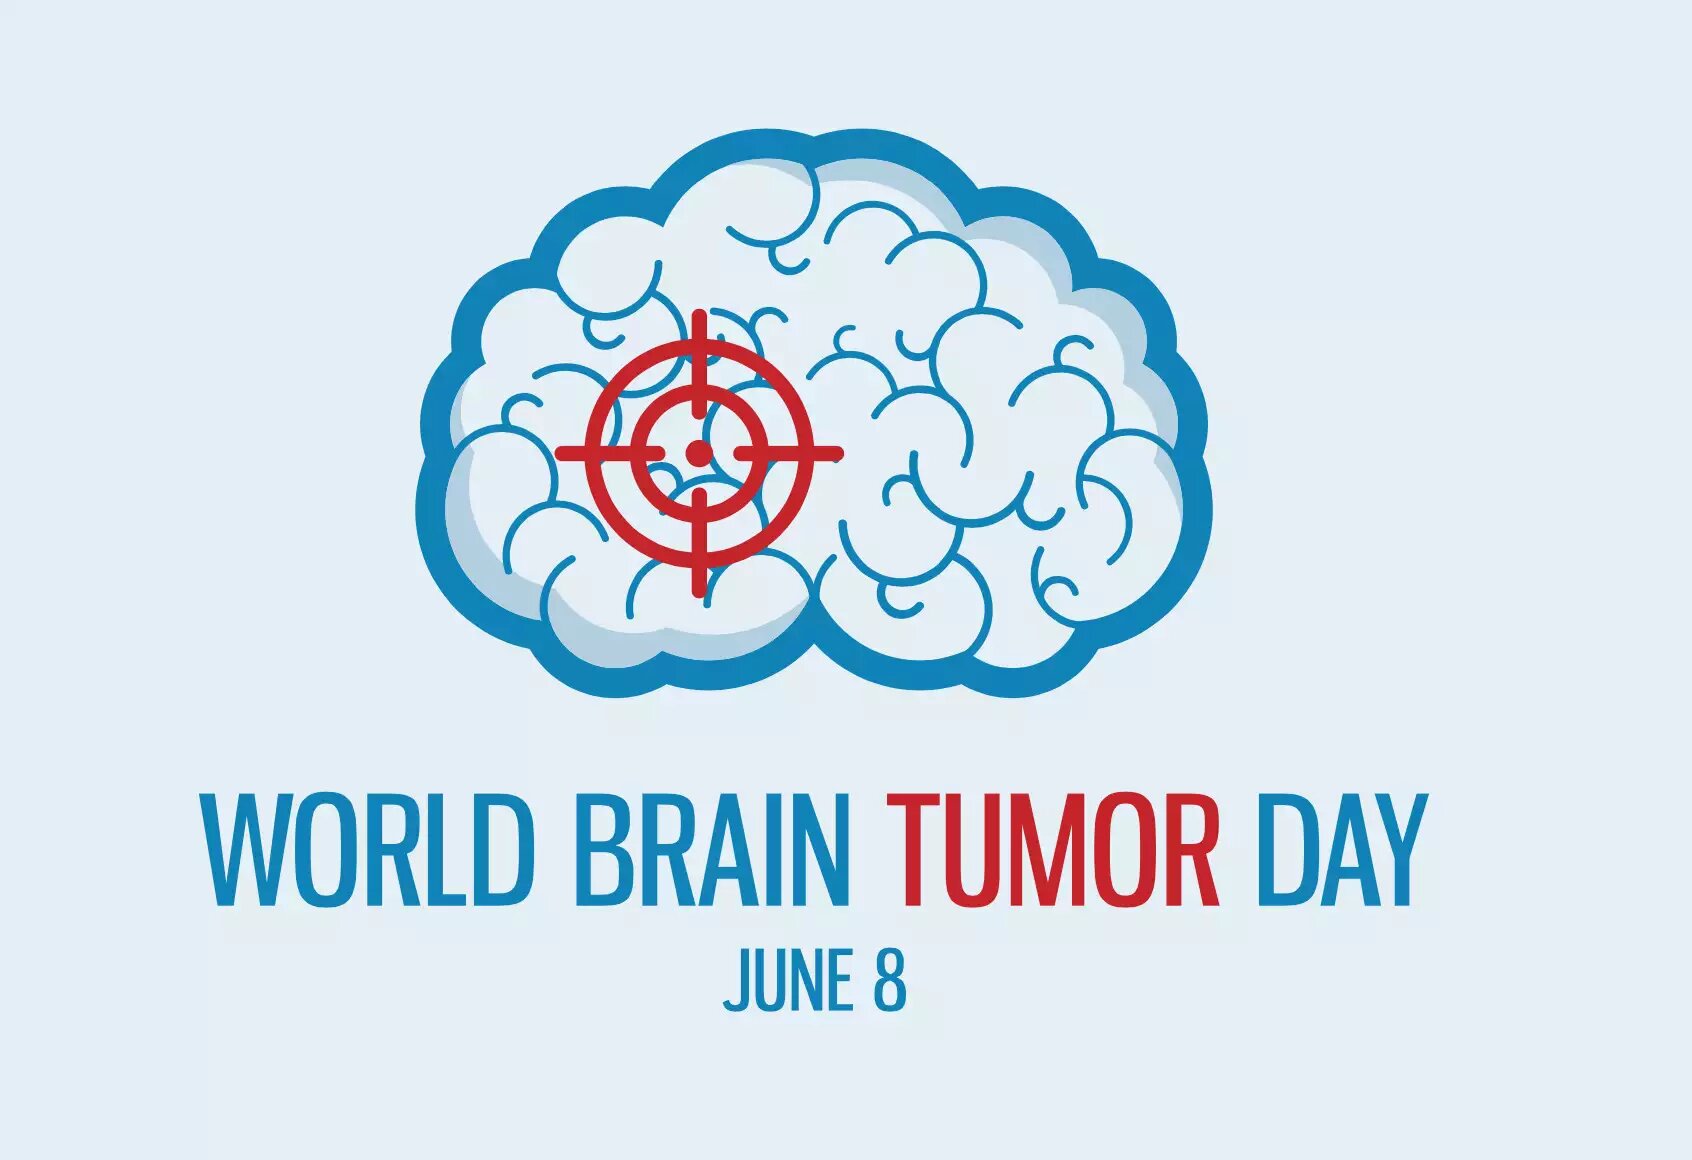 World Brain Tumor Day: Raising Awareness and Support